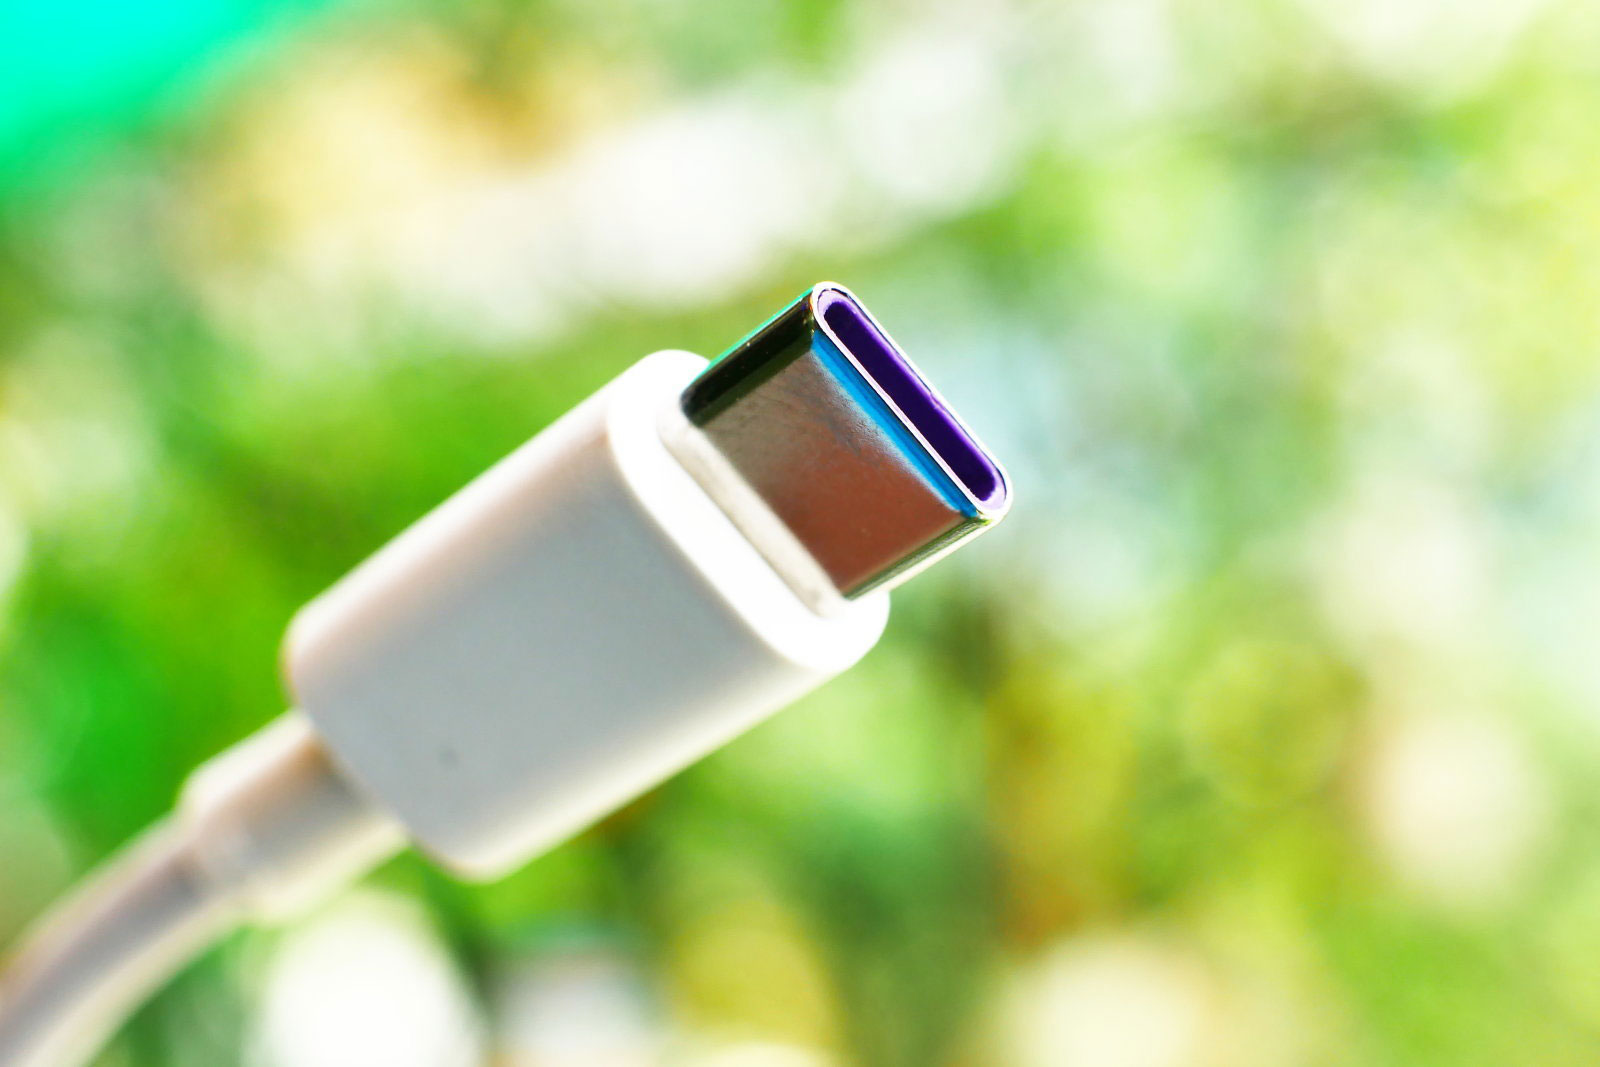 پورت USB 3.2 با سرعت ۲۰ گیگابیت بر ثانیه تا سال ۲۰۲۰ در دسترس عموم خواهد بود